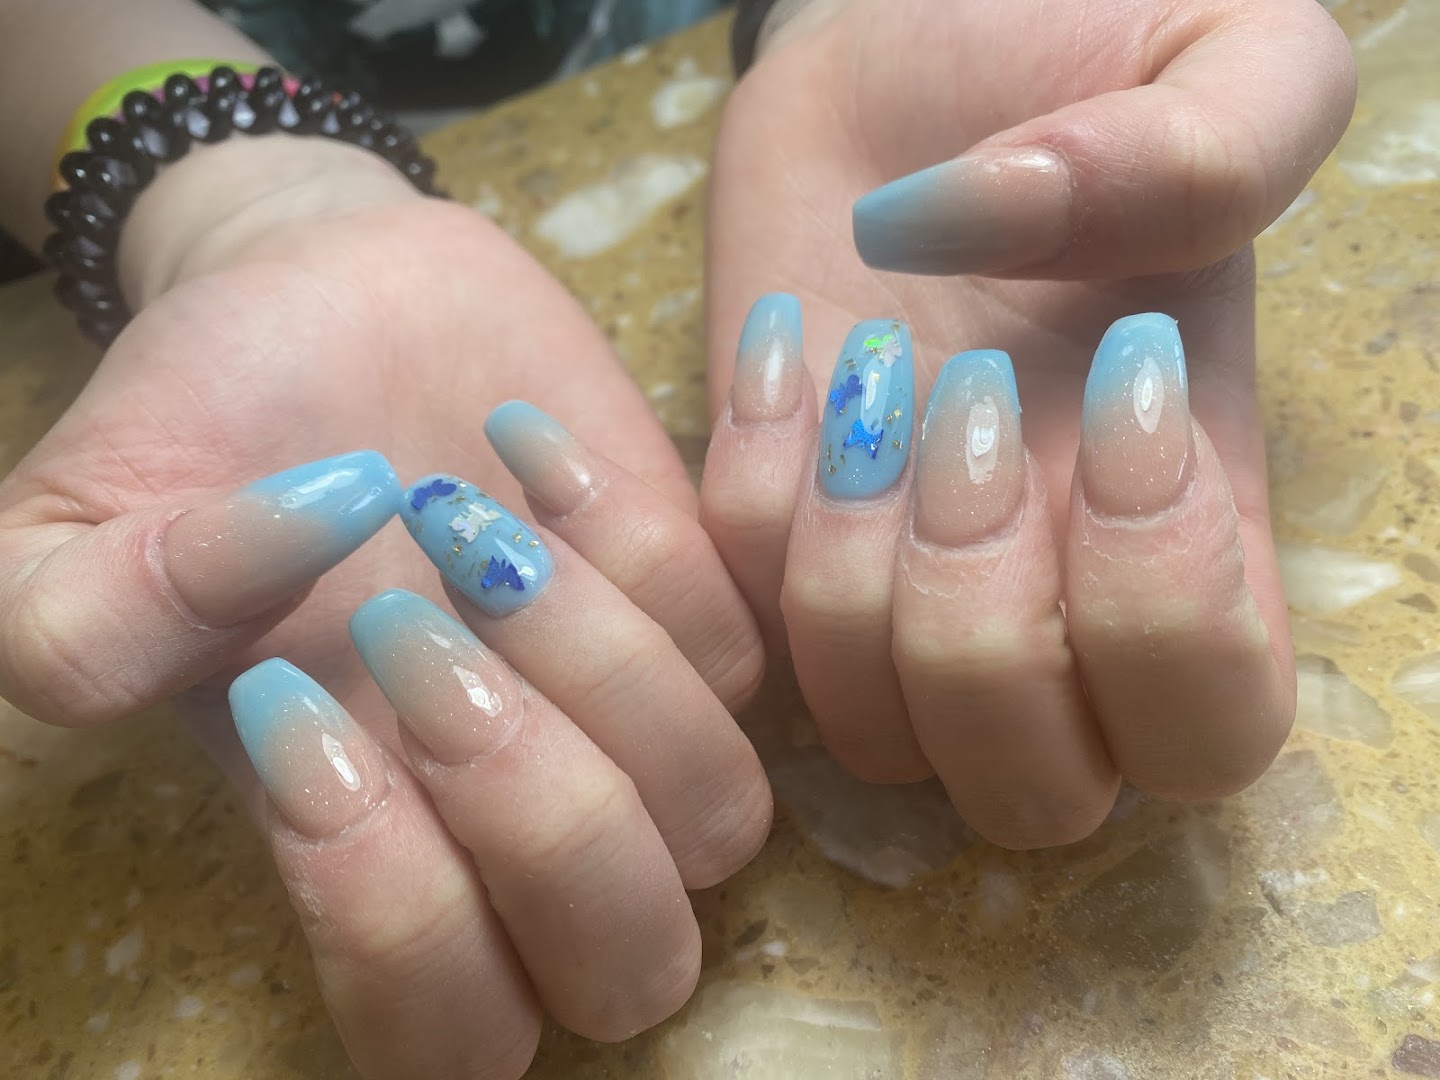 Aurora nails & spa